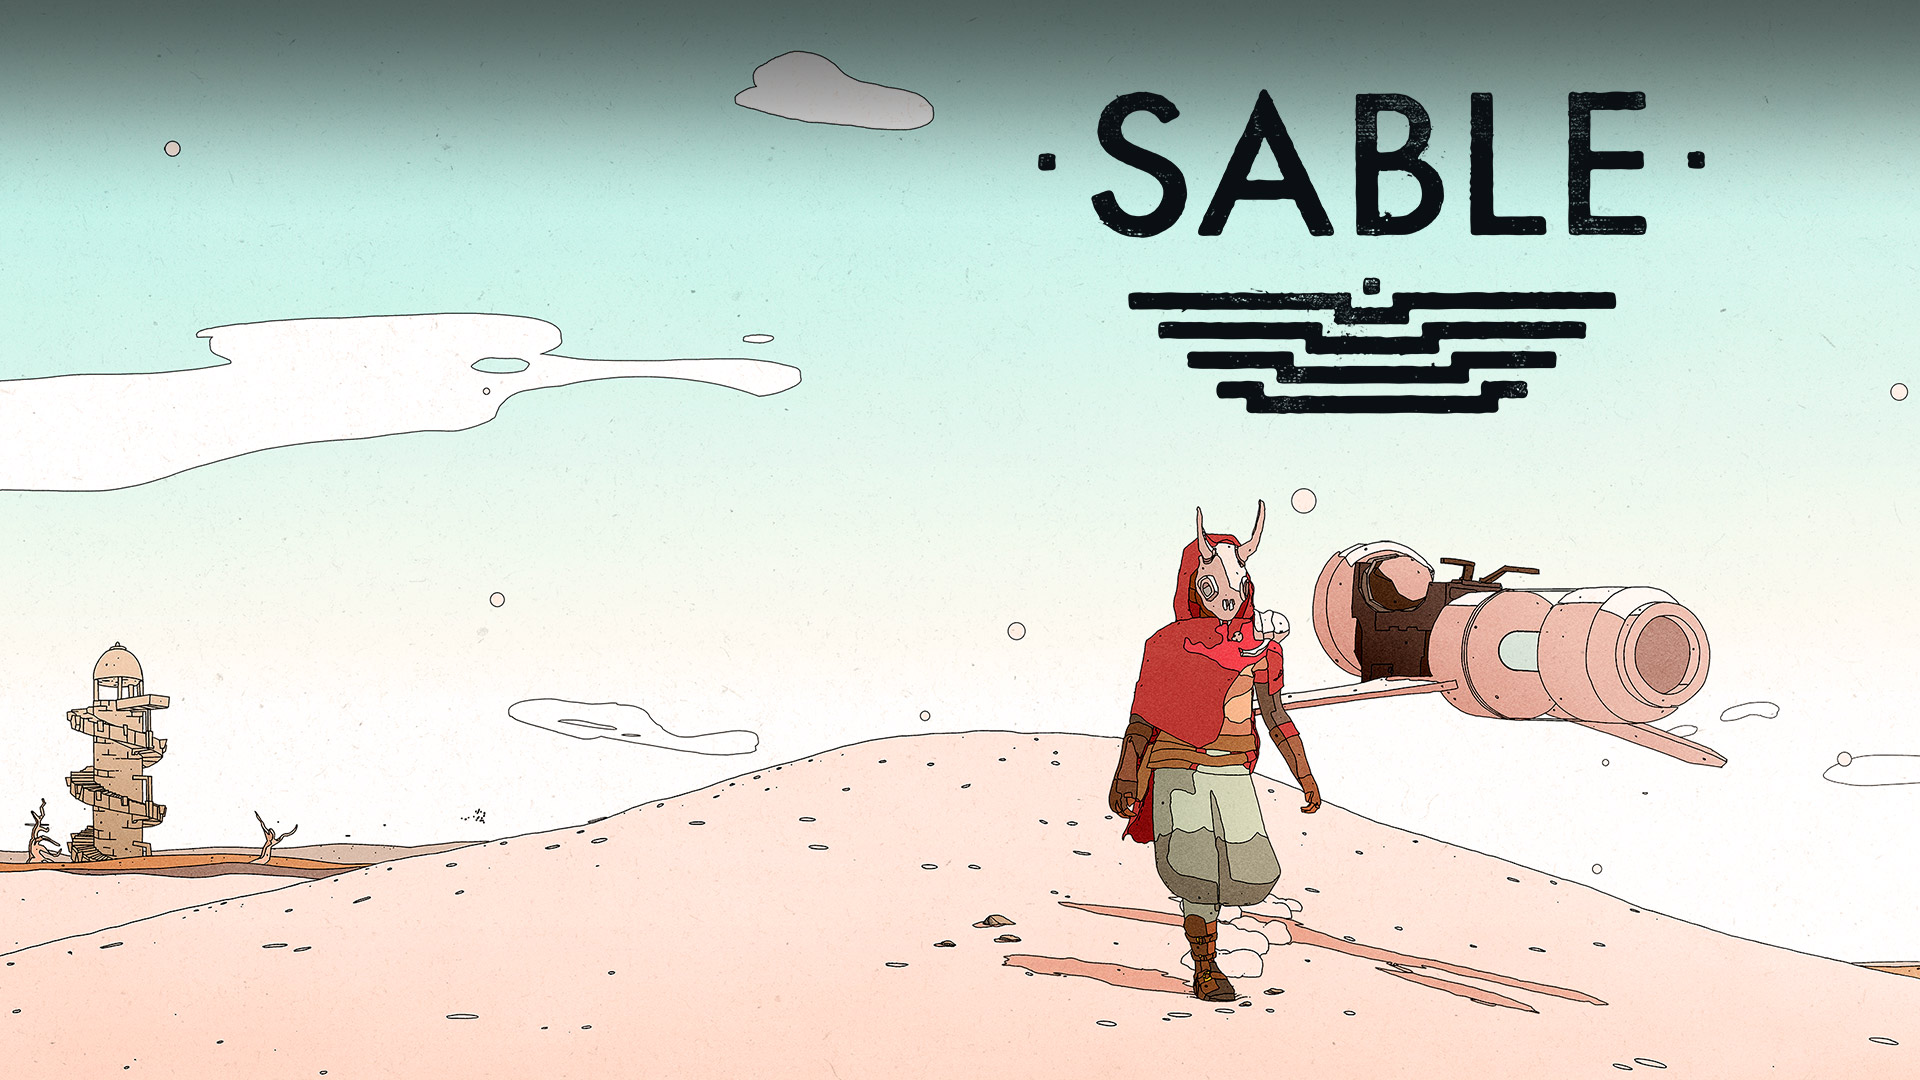 Logótipo do Sable, Sable no deserto com uma mota voadora